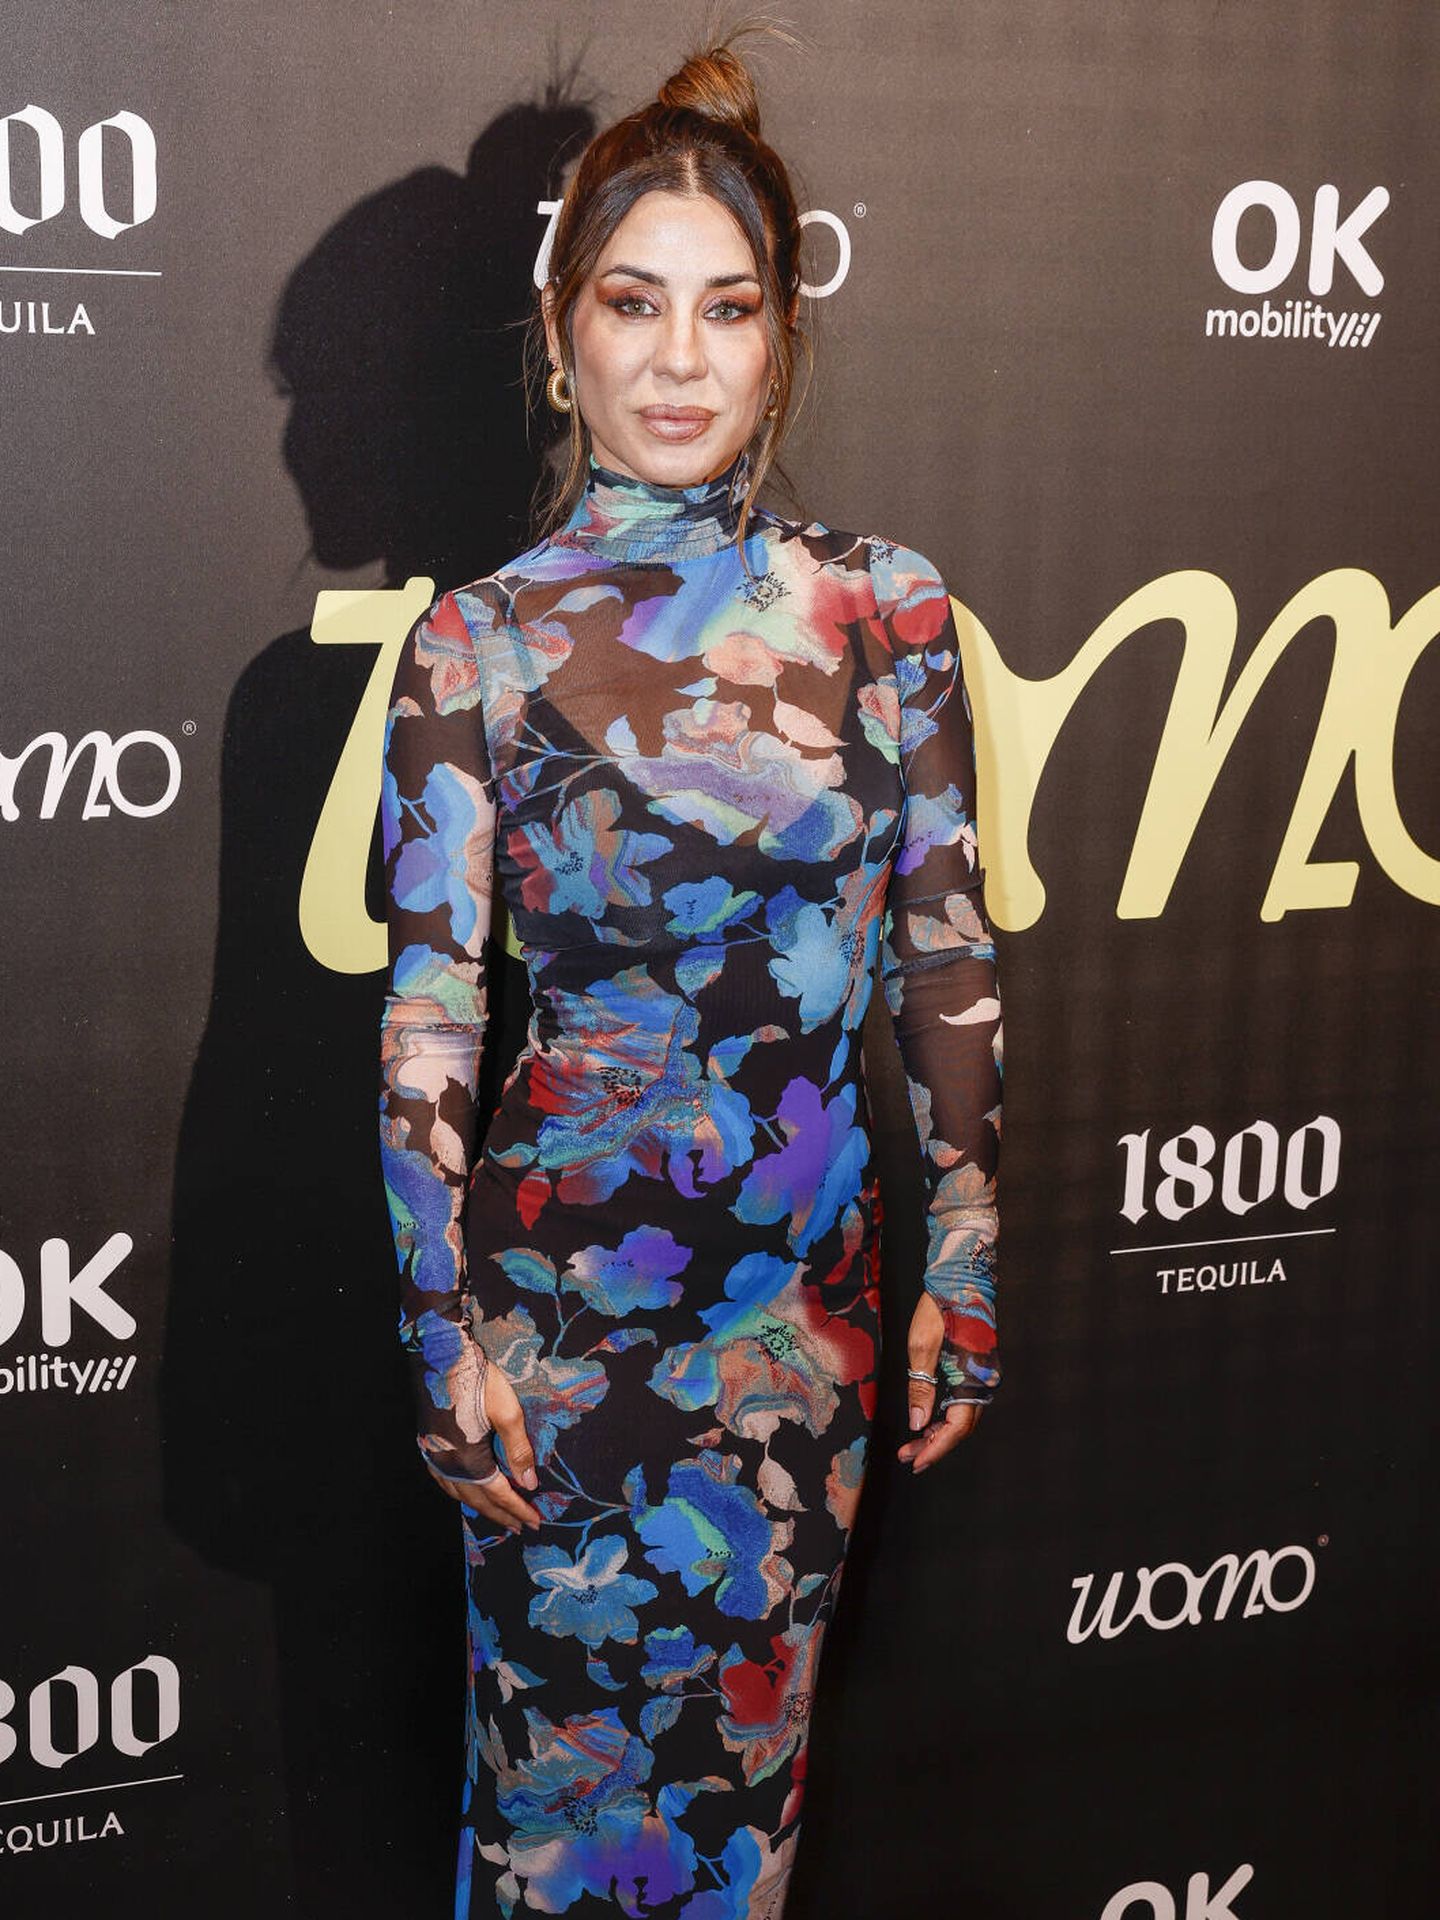 Elena Tablada escogió un vestido floral semitransparente (Gtres)